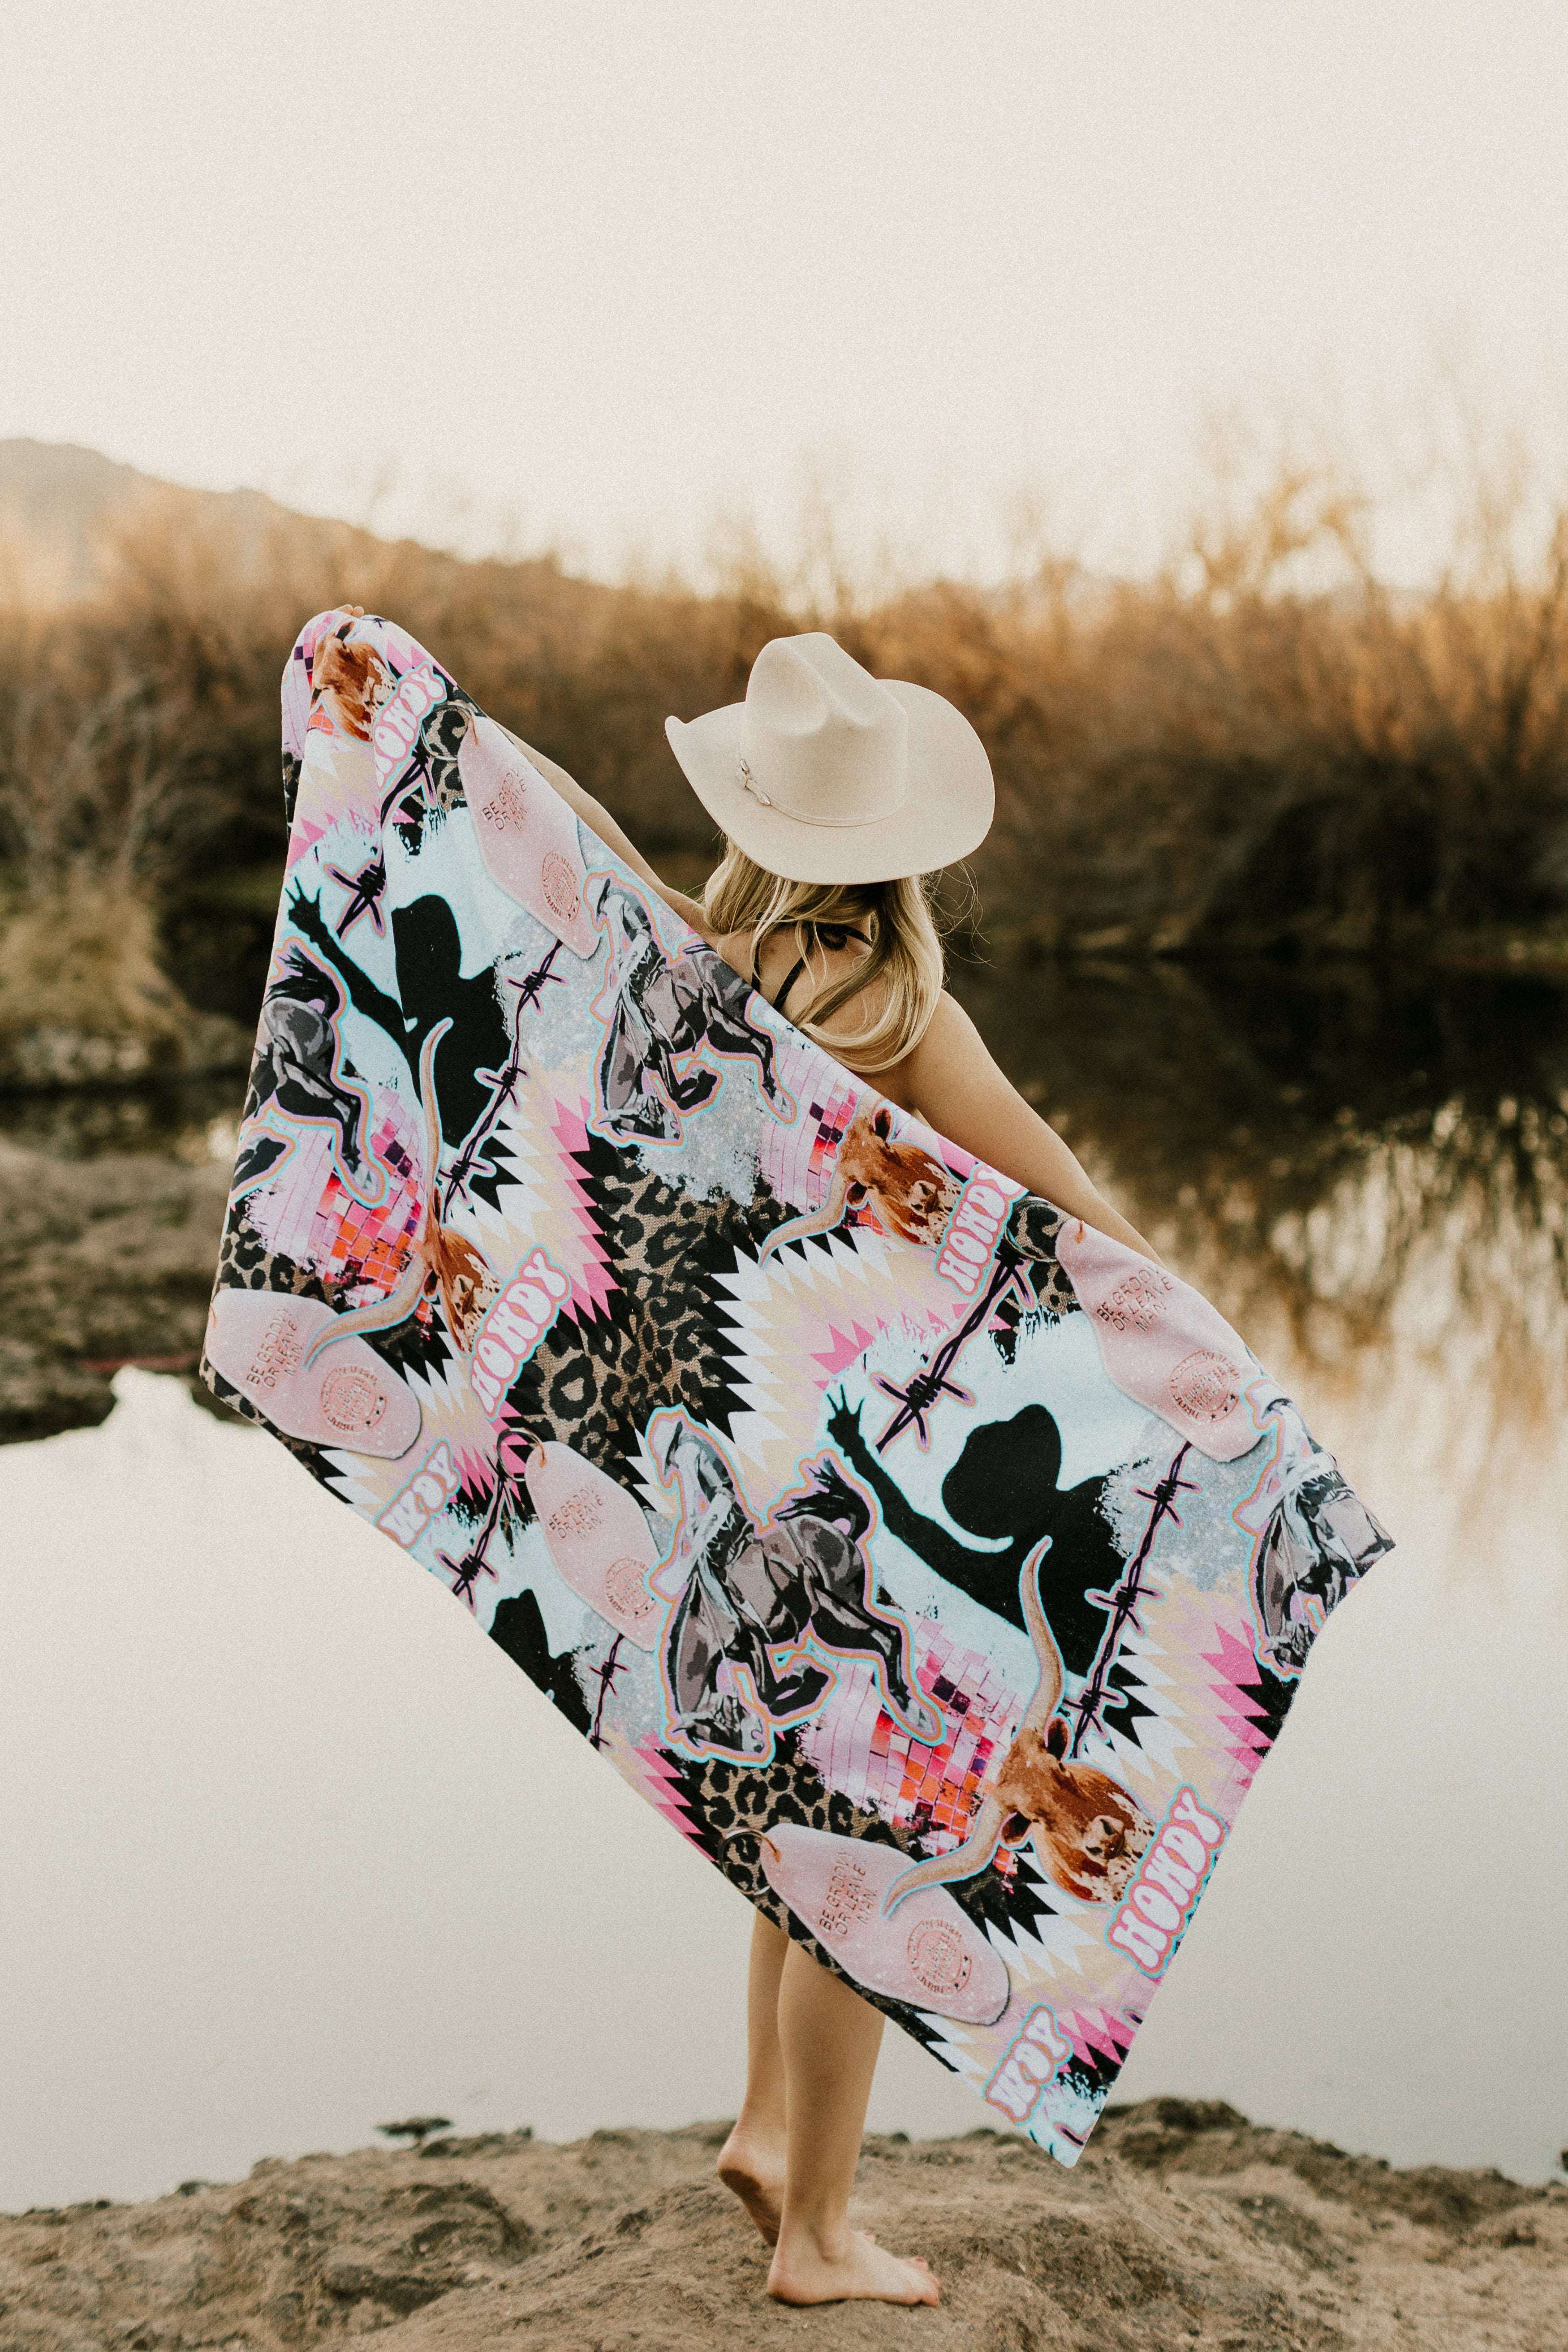 Buck Em Cowgirl Beach Towel - The Glamorous Cowgirl